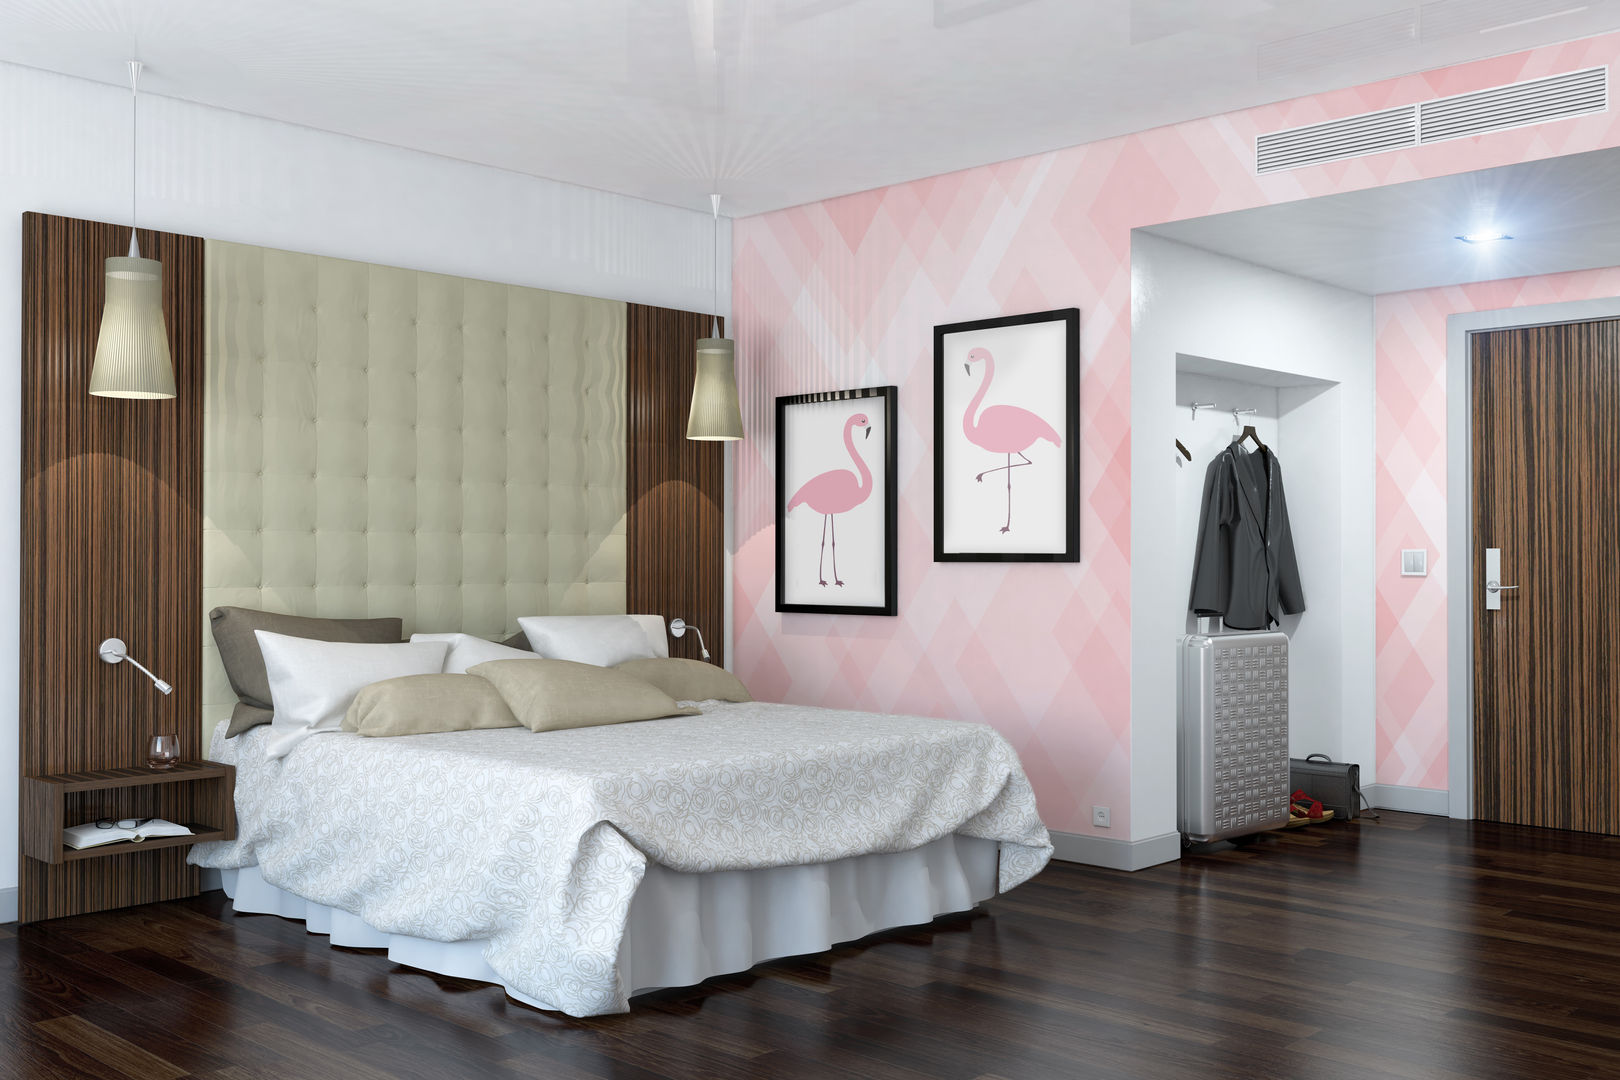 Flamingo Pixers Dormitorios modernos: Ideas, imágenes y decoración wall mural,wallpaper,wall decal